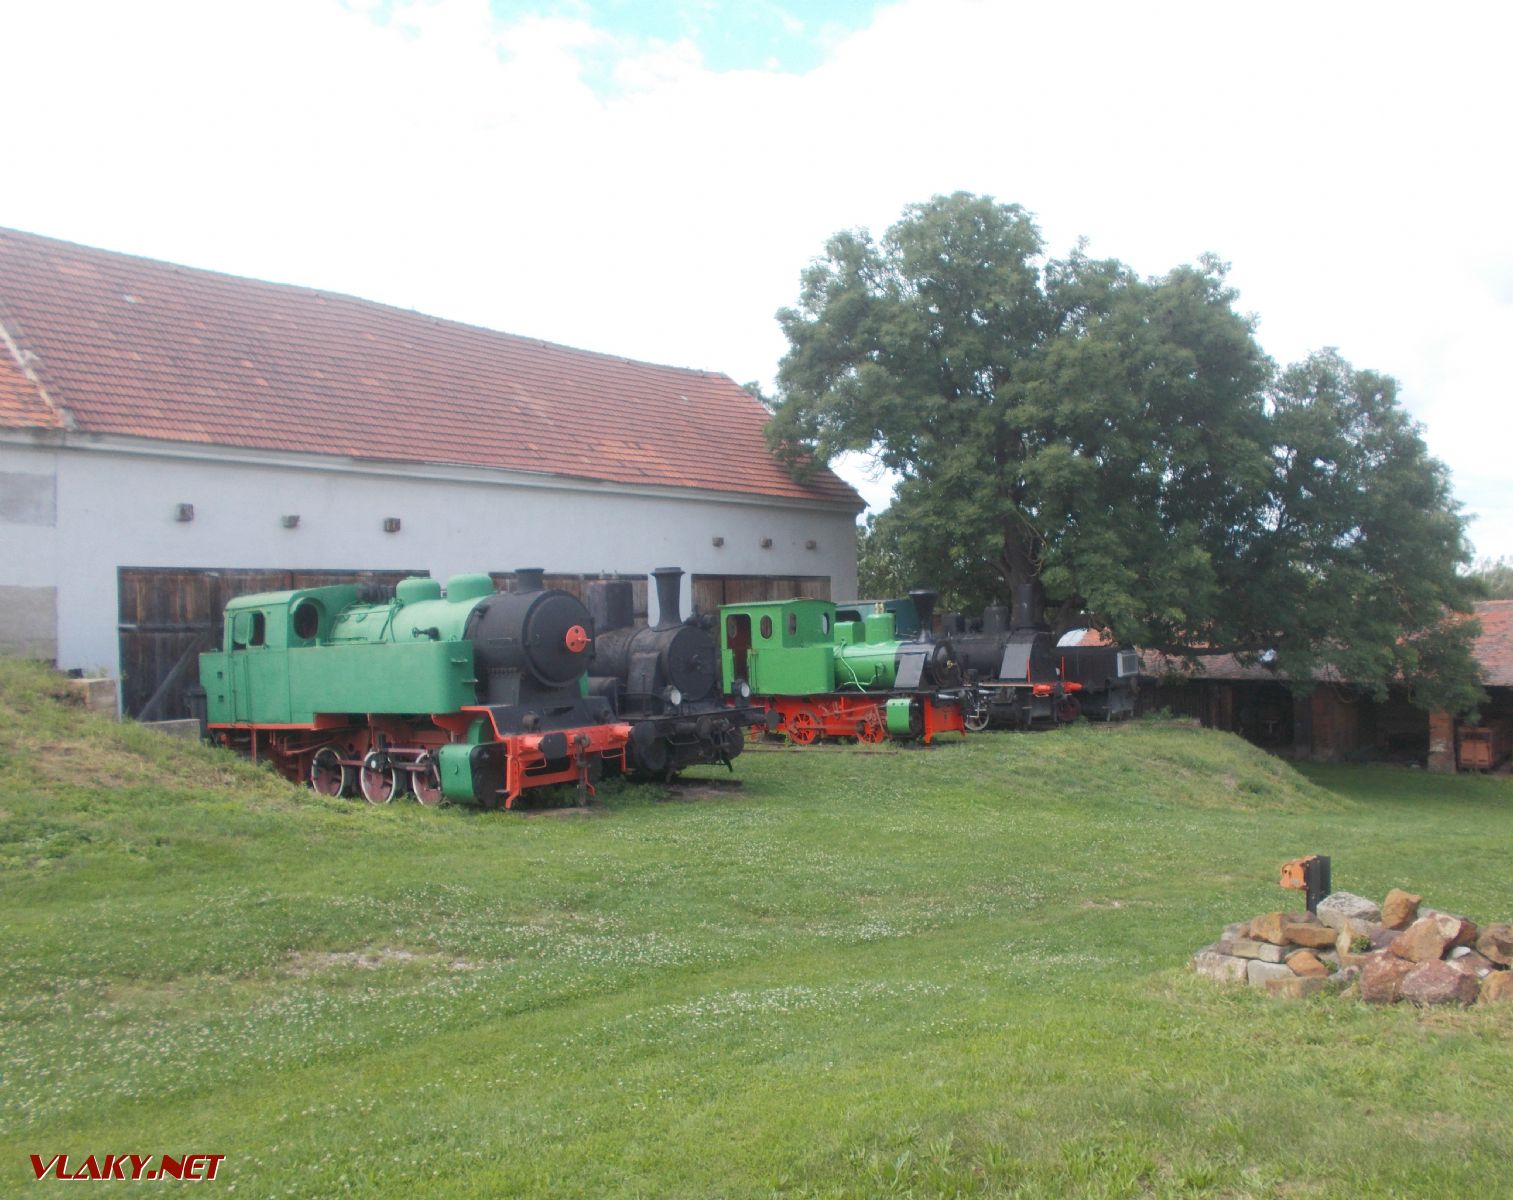 Železniční muzeum Zlonice (CZ)